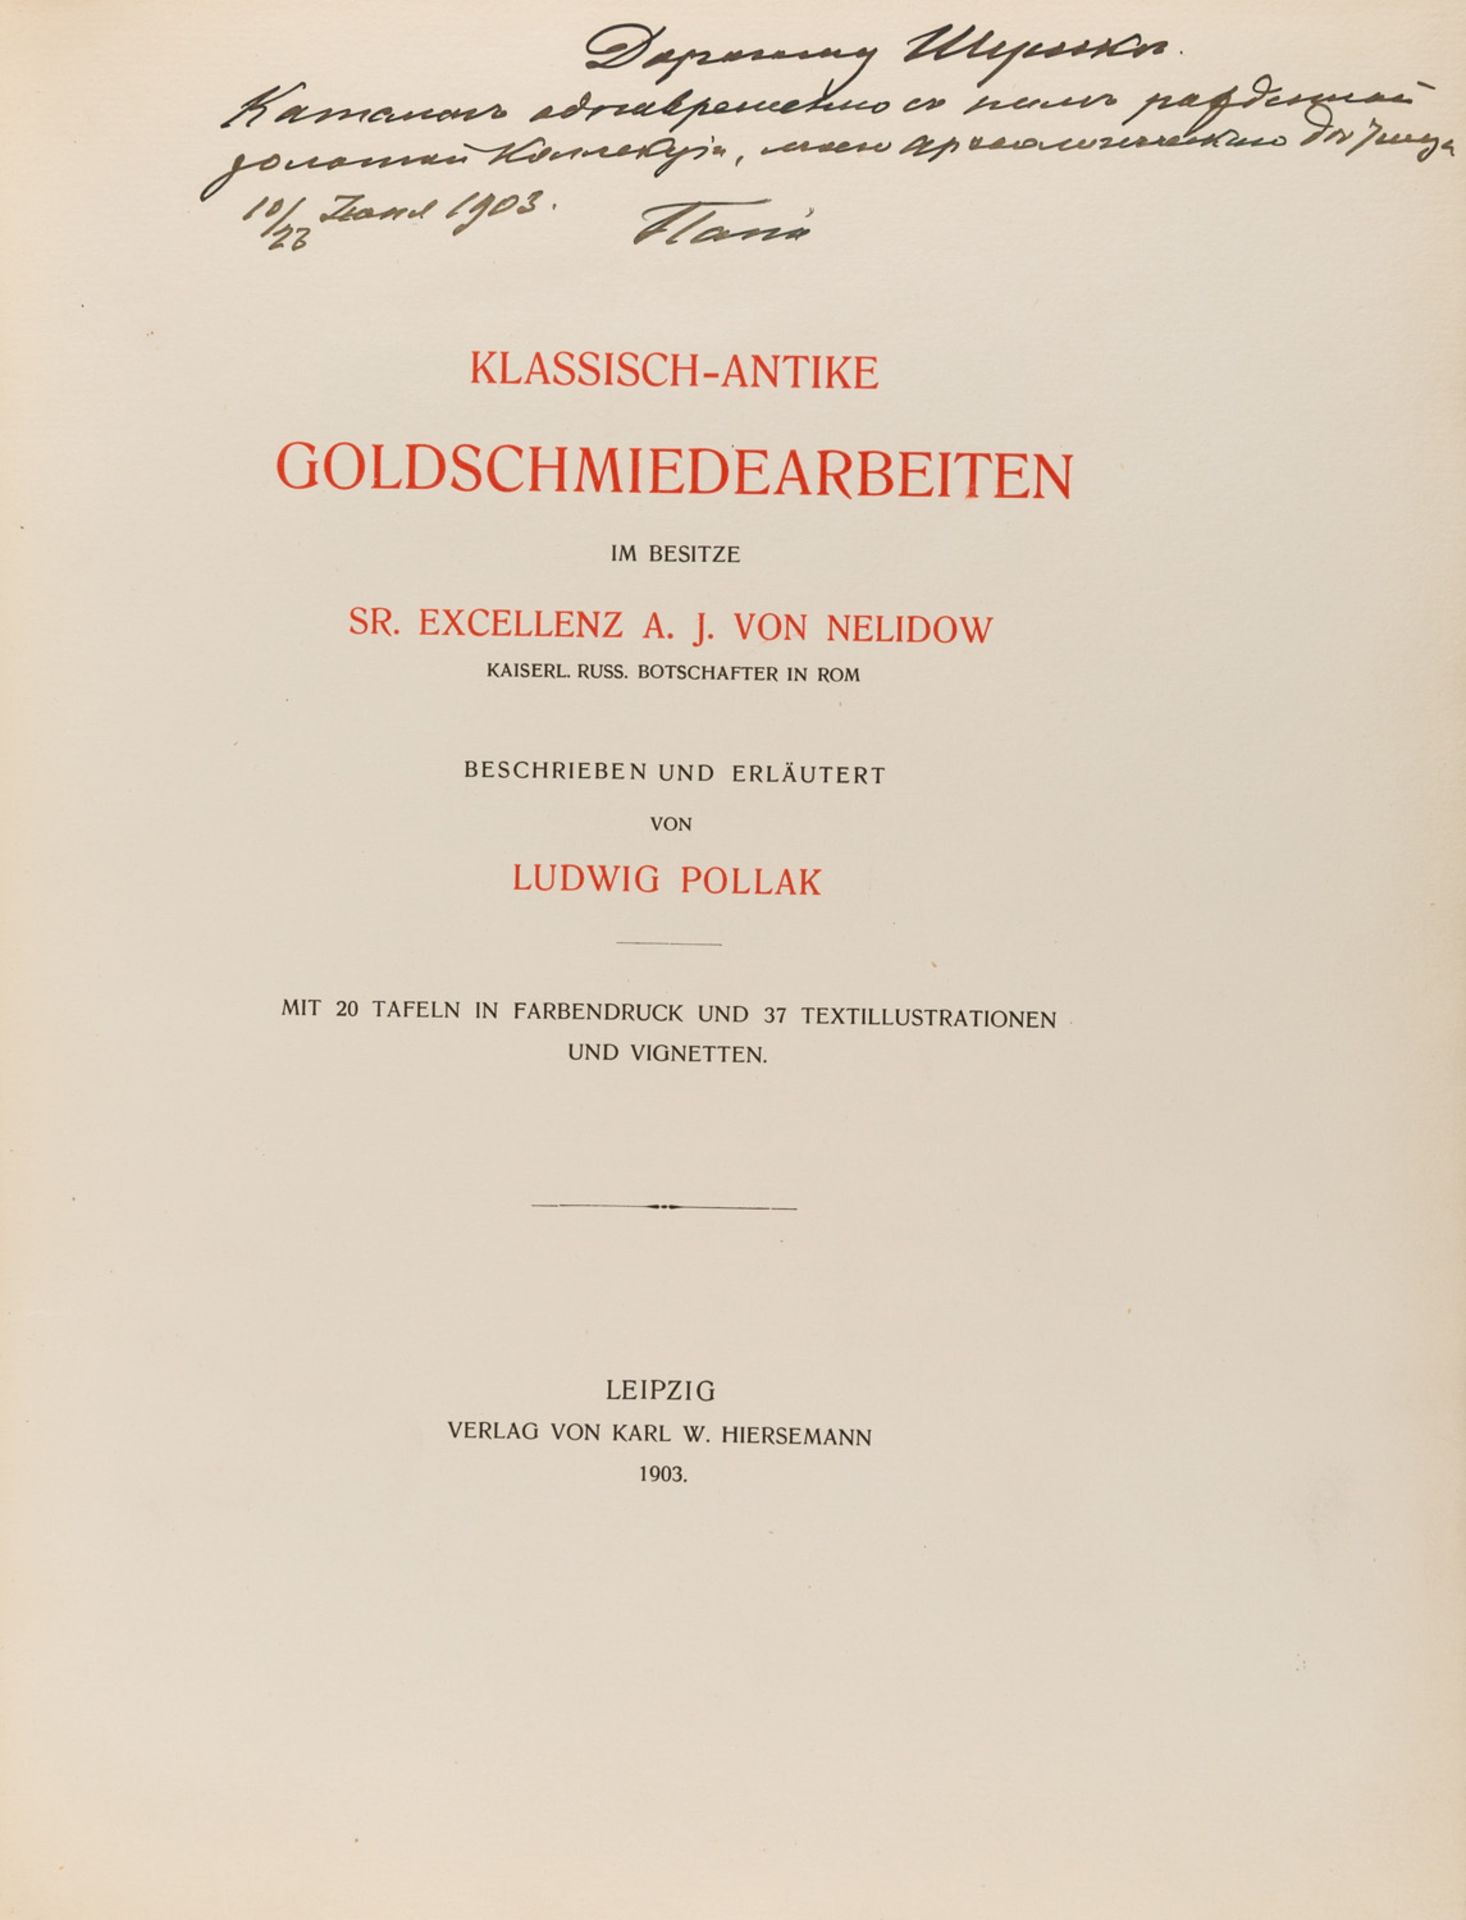 KLASSICH-ANTIKE GOLDSCHMIEDEARBEITEN IM BESITZE A.J. VON NELIDOW, 1903 - Bild 2 aus 17